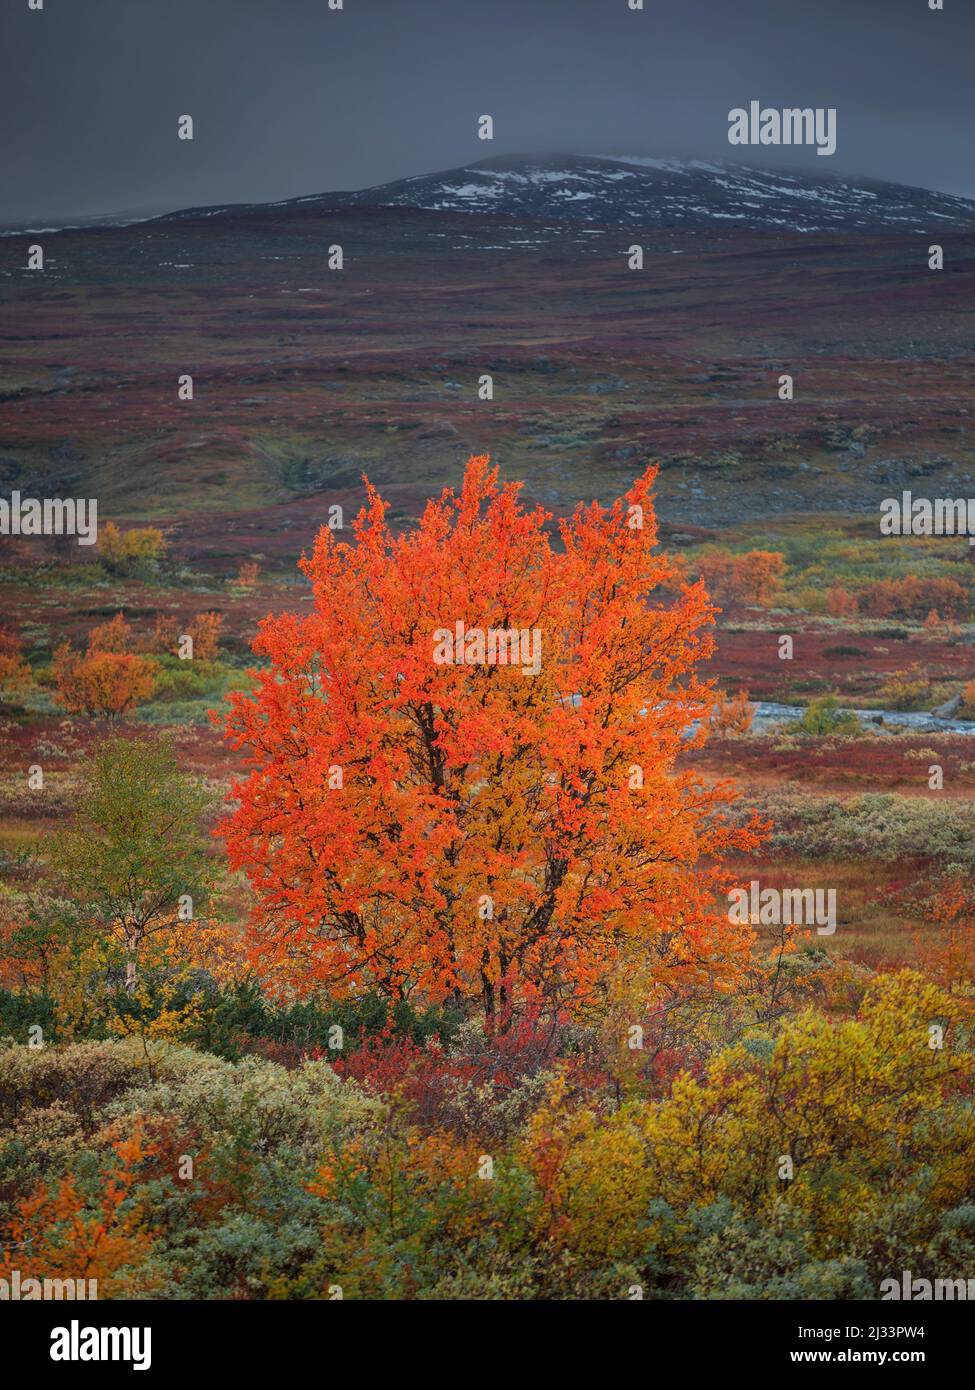 Arbre coloré en automne avec montagne enneigée le long de la route de la nature, sur le plateau de Vildmarksvagen à Jämtland en Suède Banque D'Images